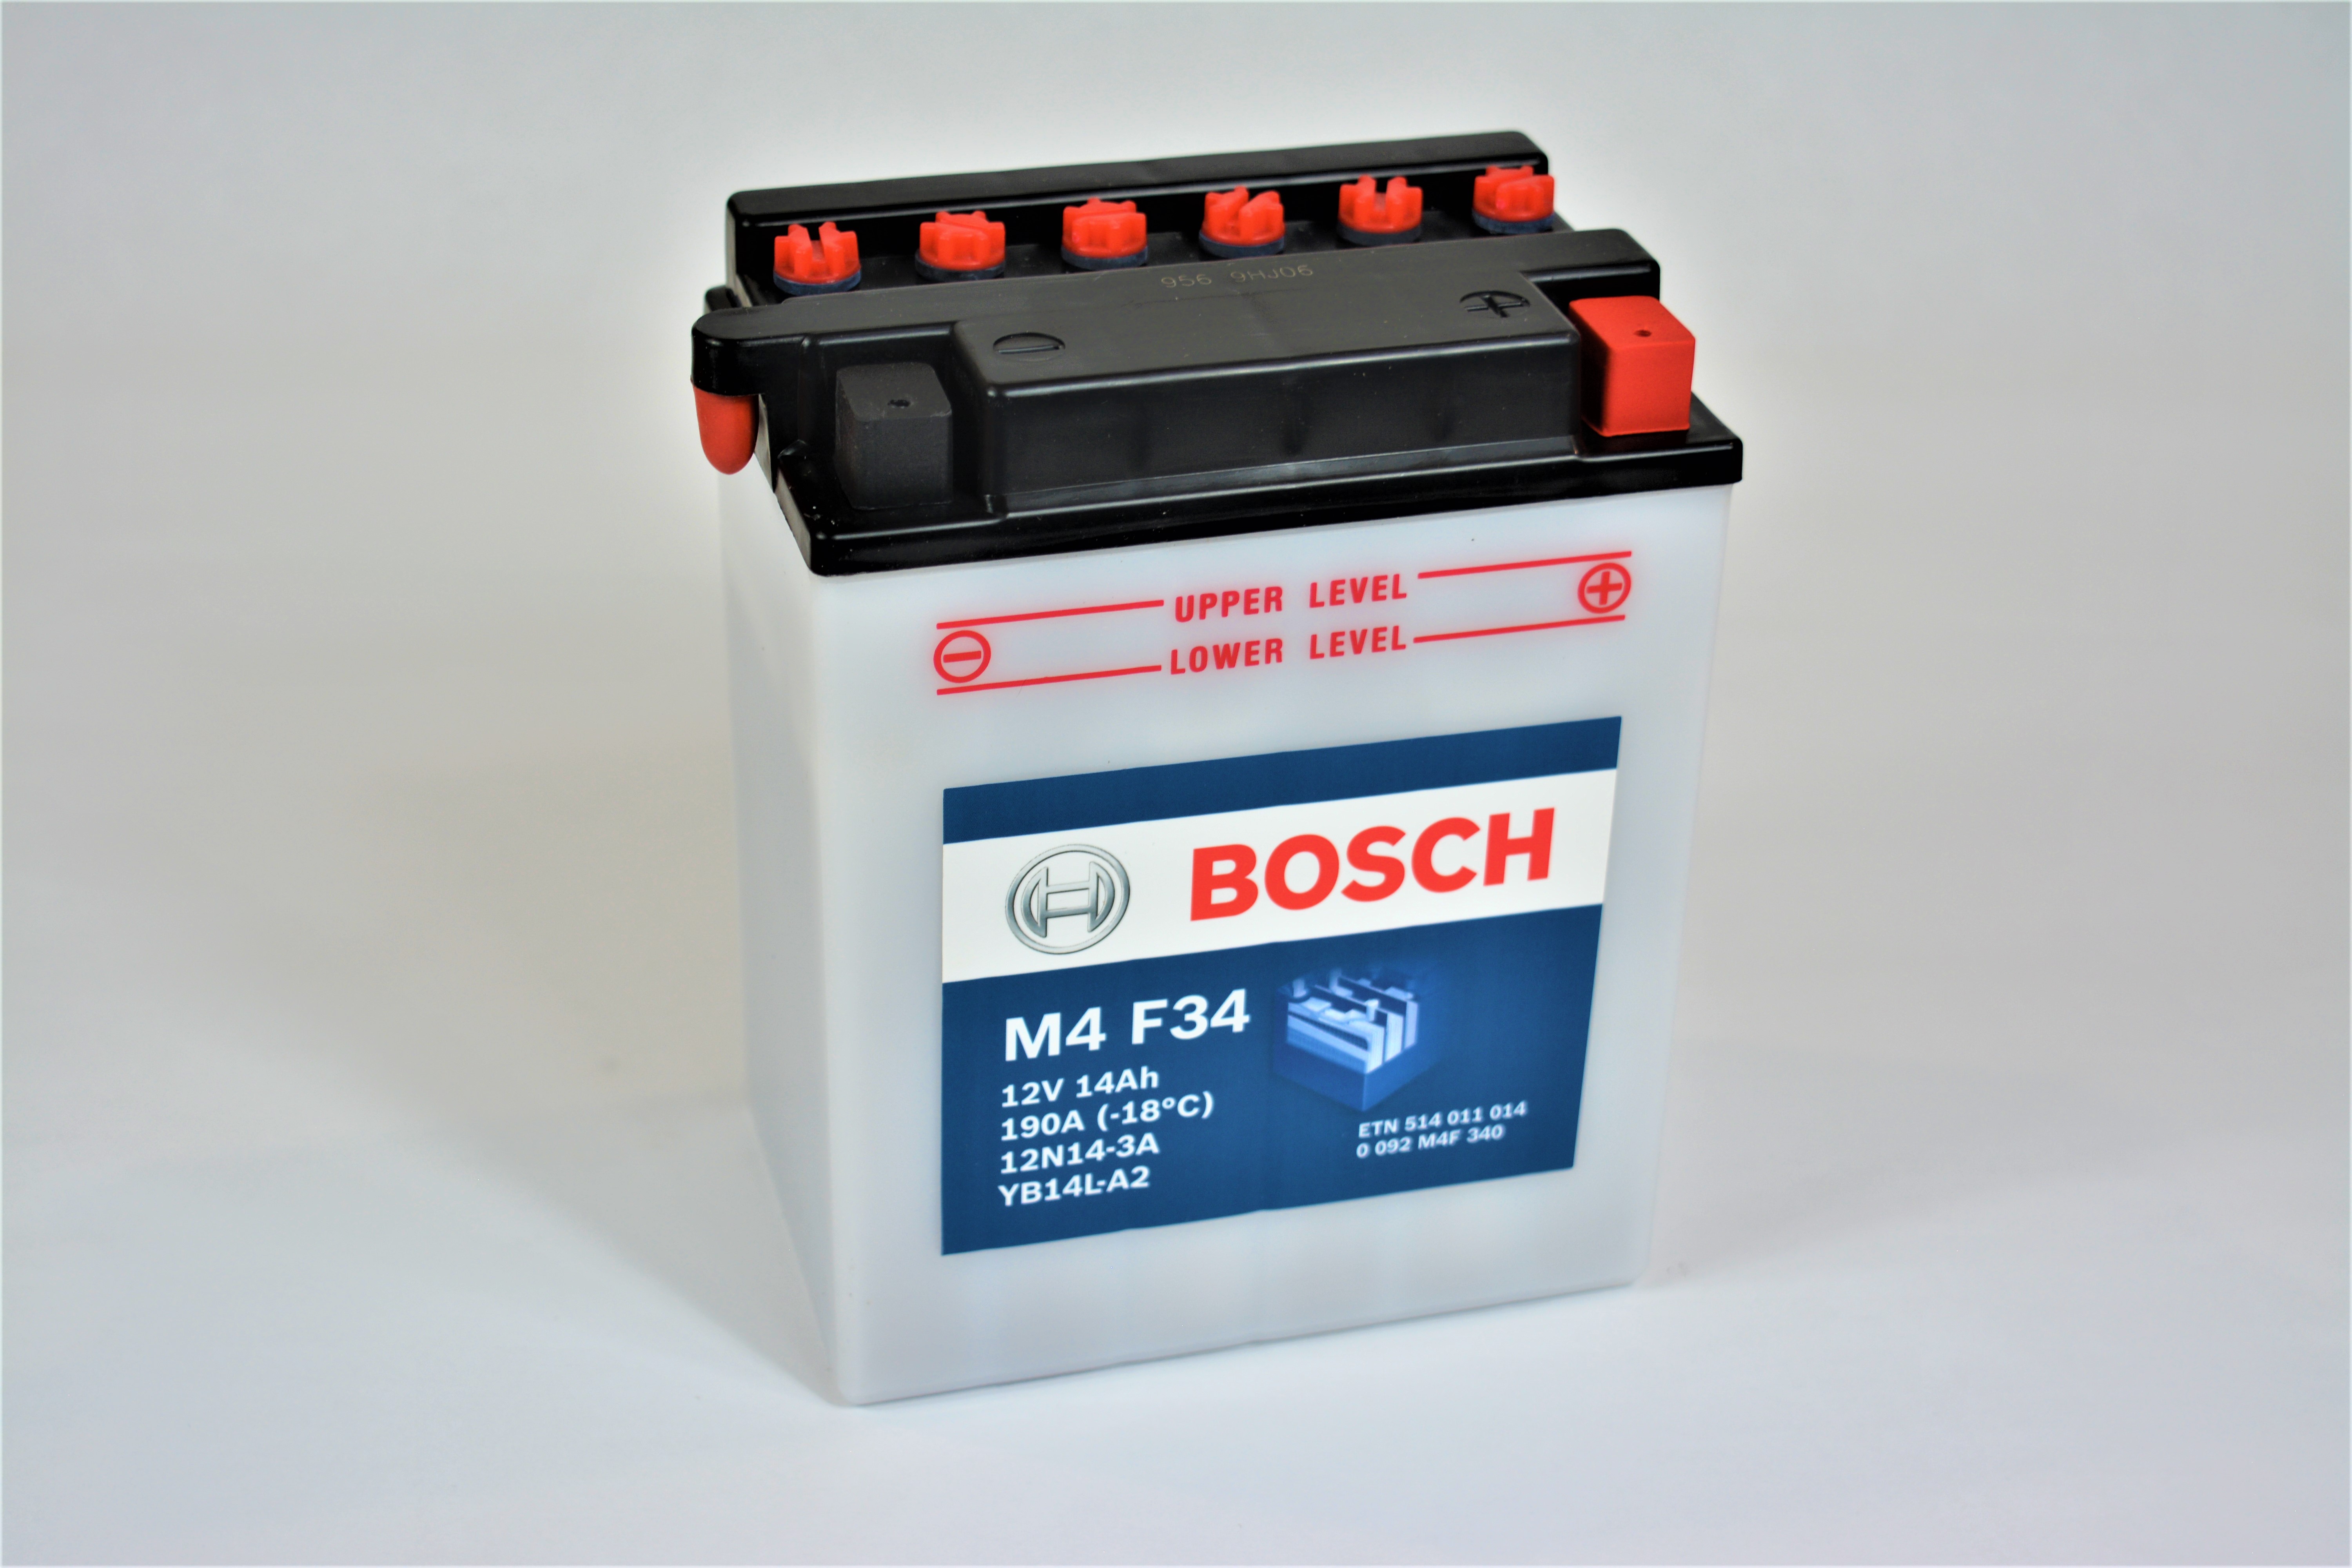 BOSCH Bosch - 12v 14ah - motor akkumulátor - jobb+ *YB14L-A2